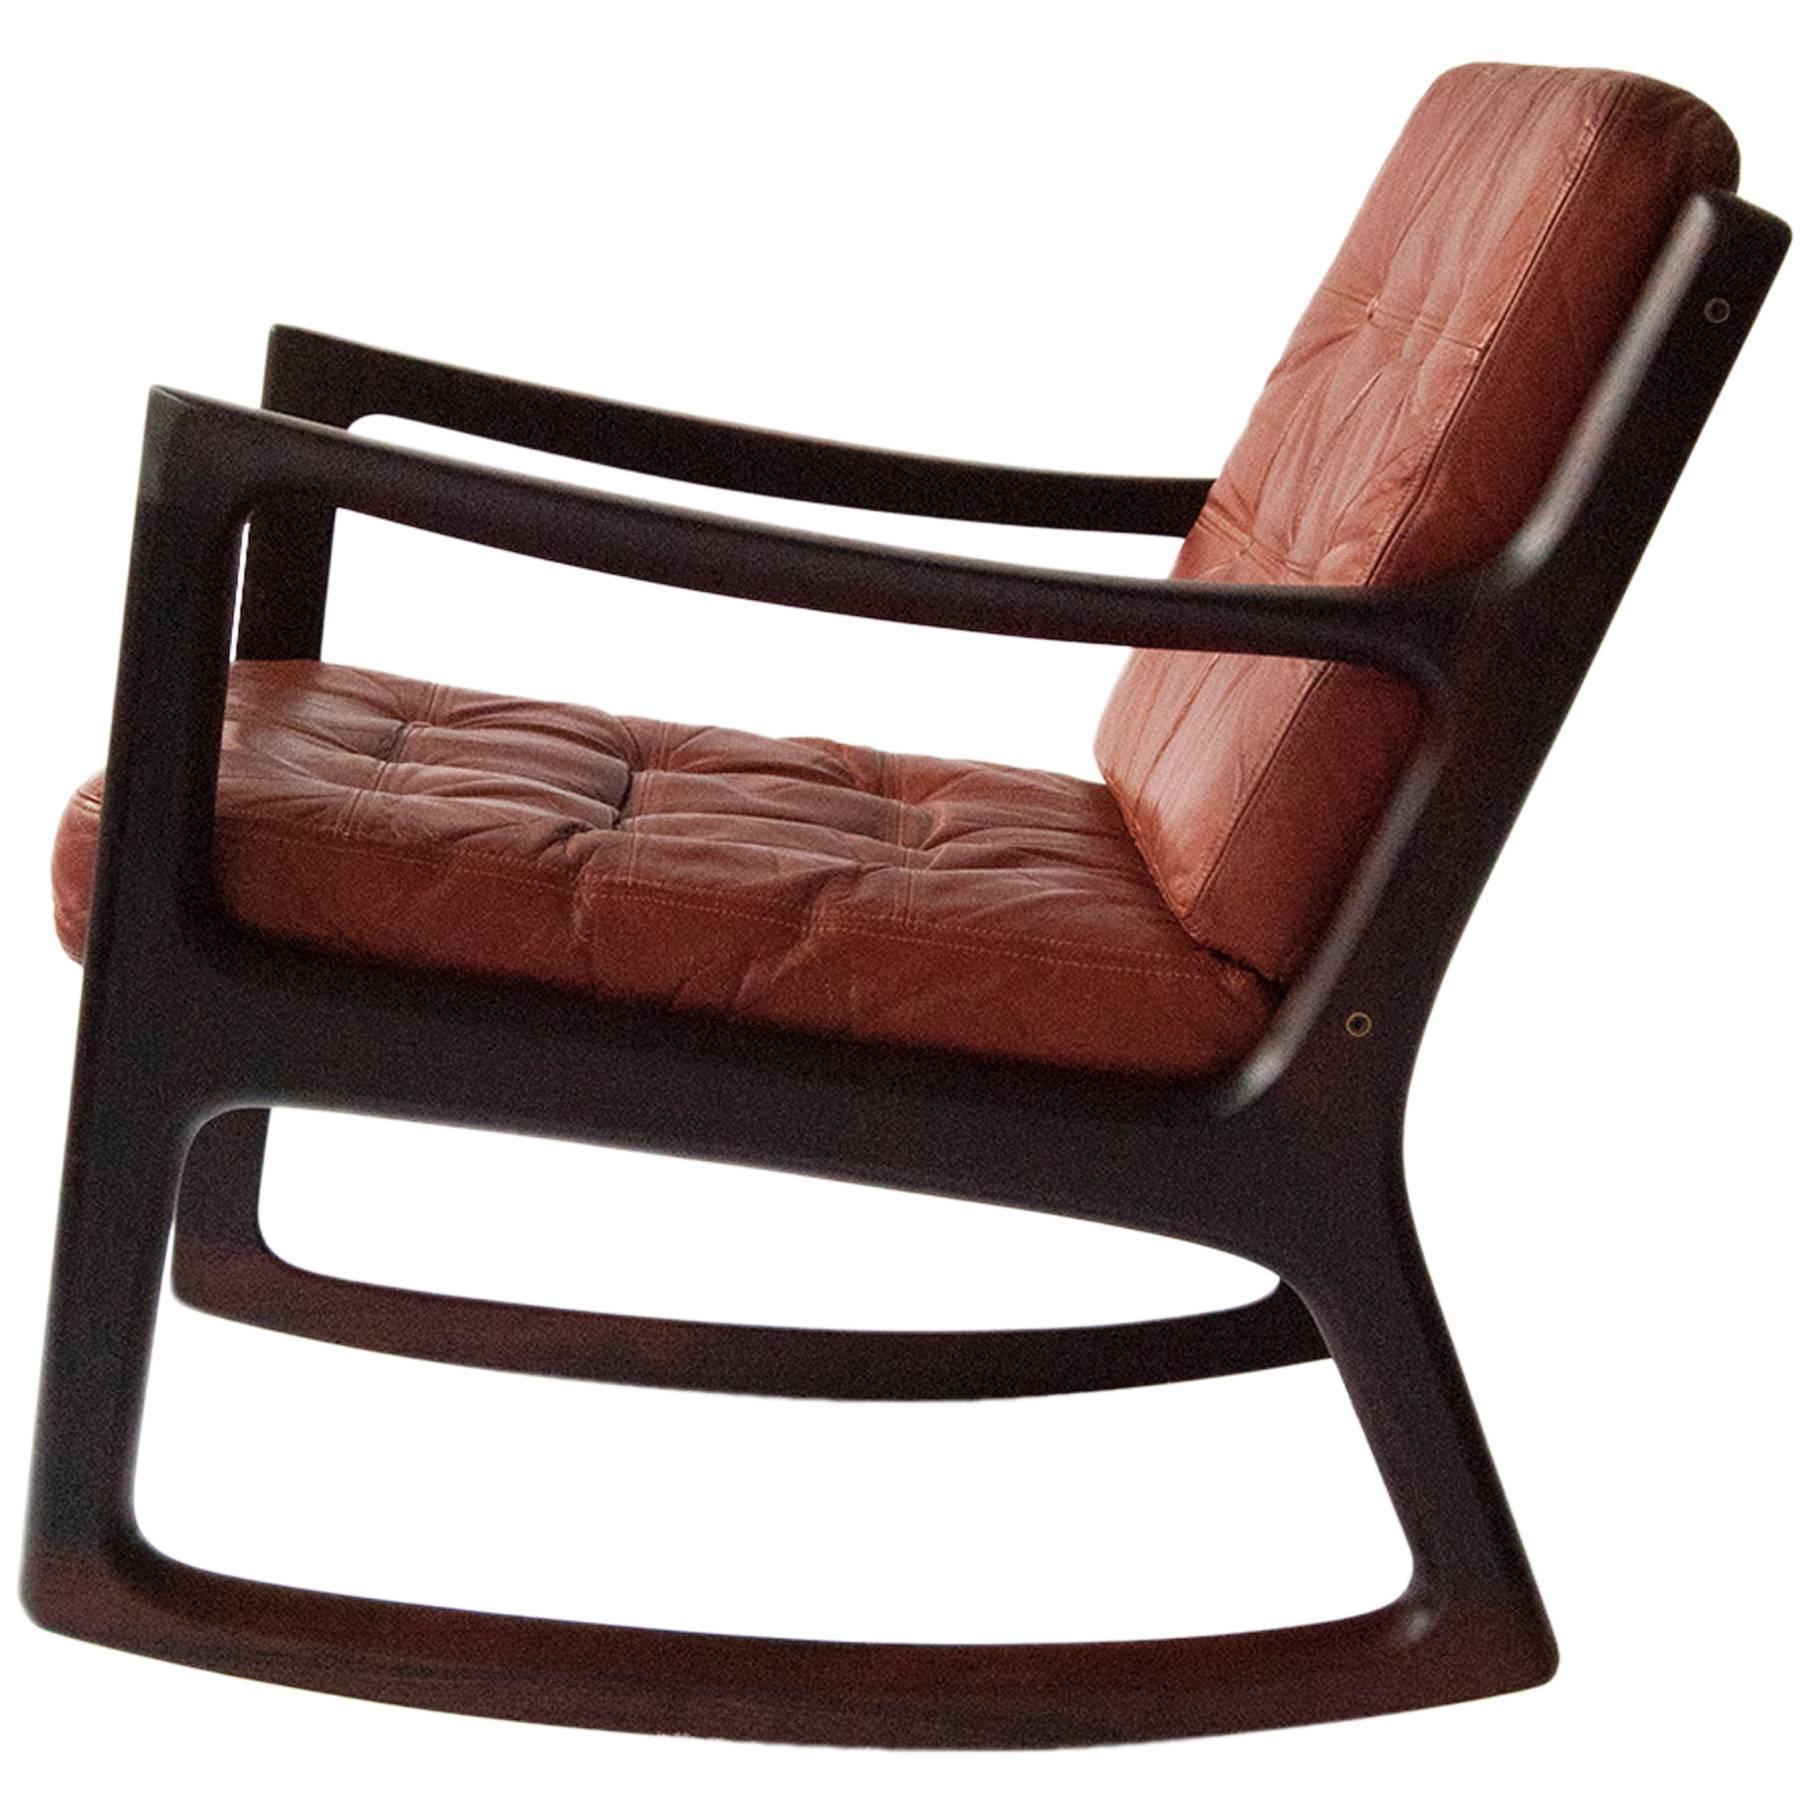 Ole Wanscher 'Senator' Rosewood Rocking Chair, circa 1960